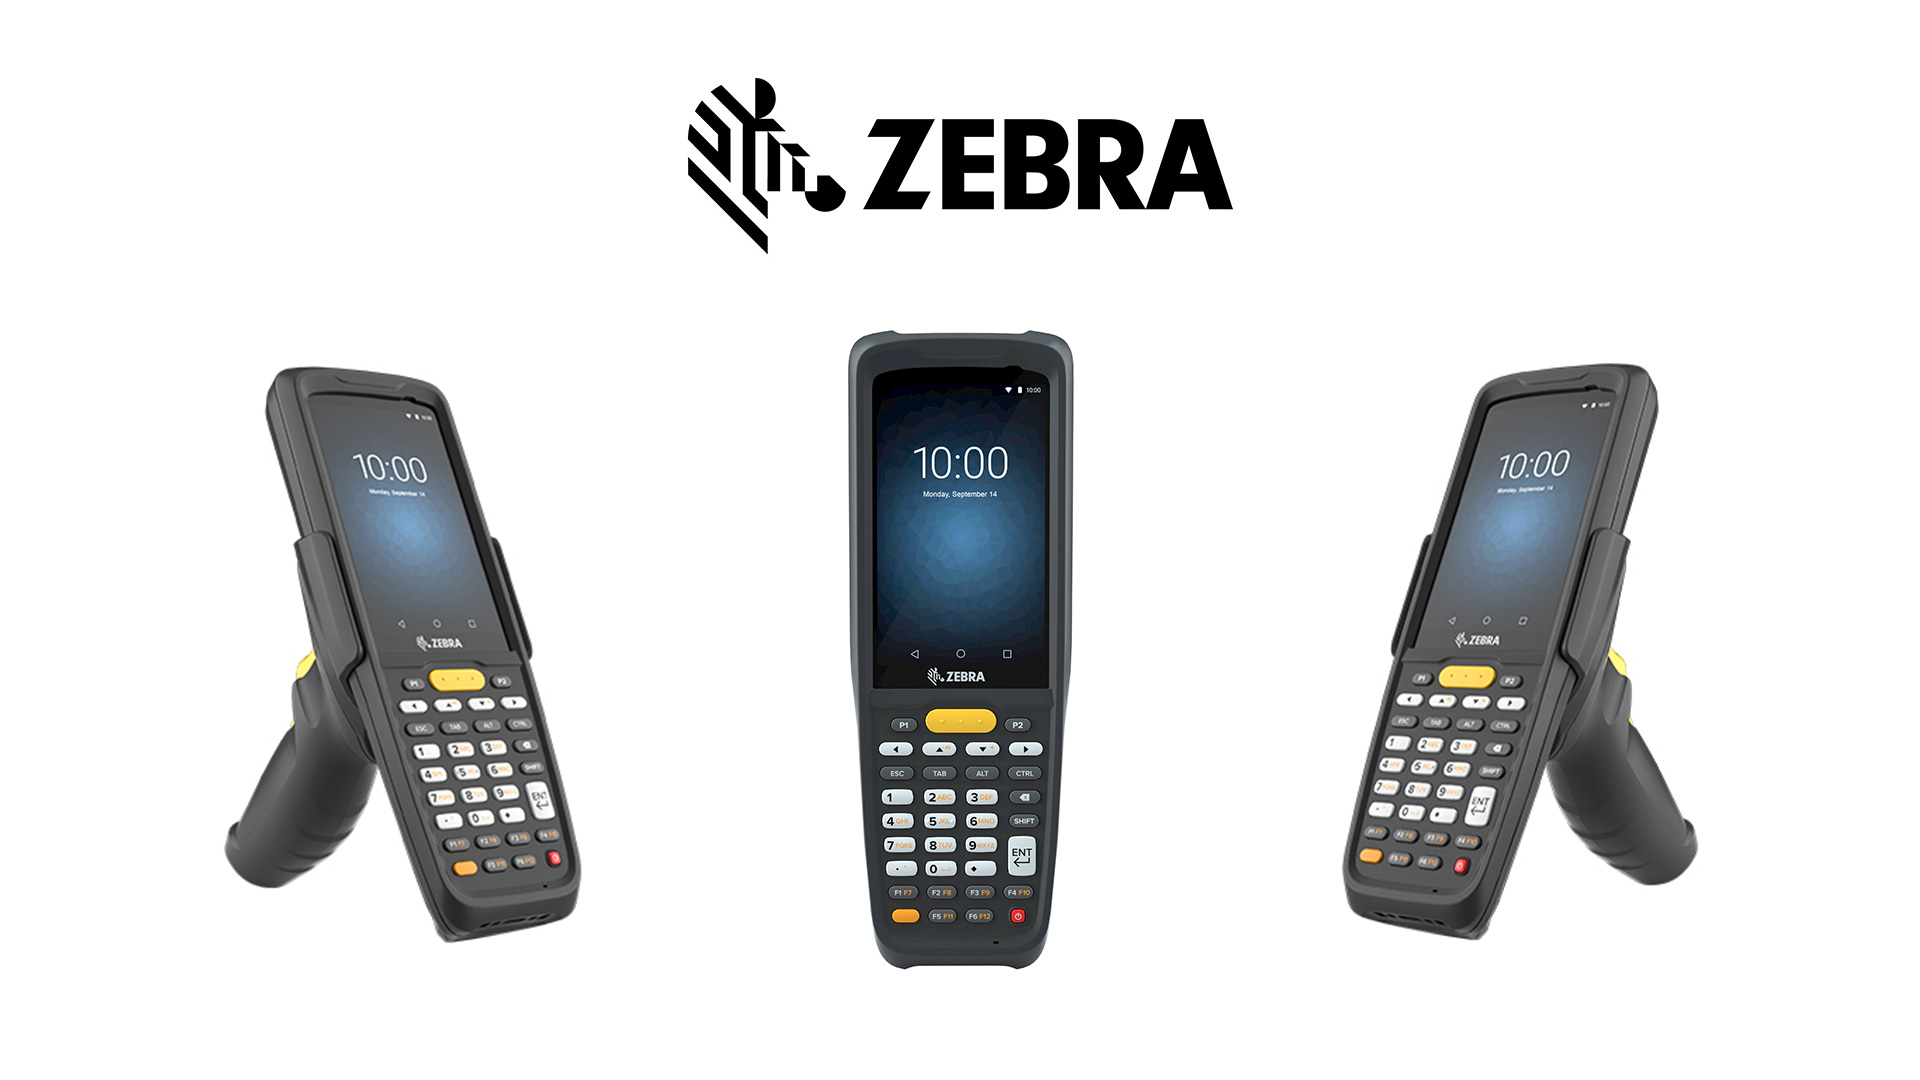 Zebra MC2200 and MC2700